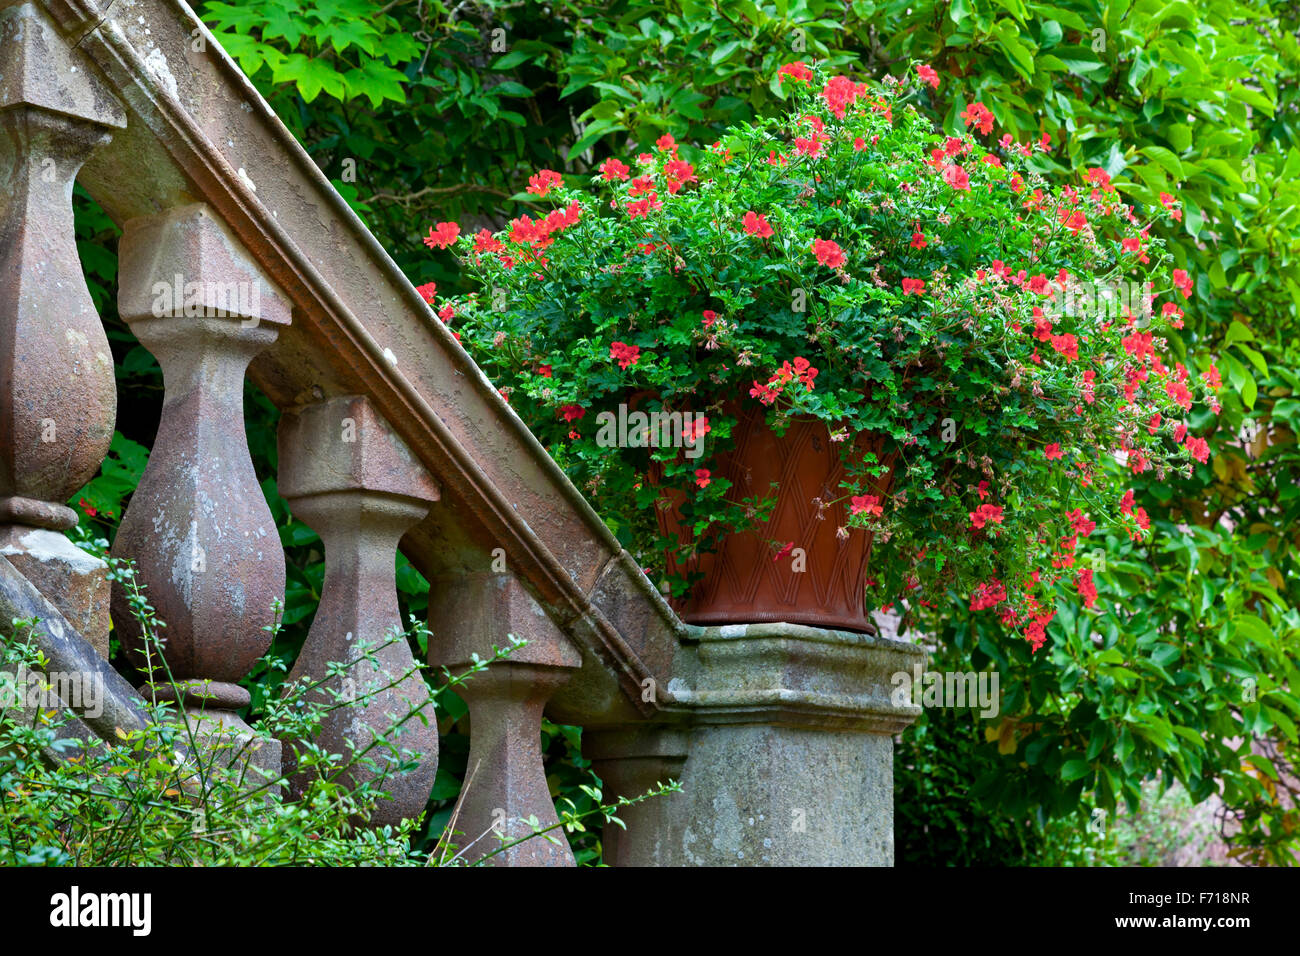 Pélargonium rouge fleurs dans un pot sur un escalier en pierre dans un jardin Banque D'Images